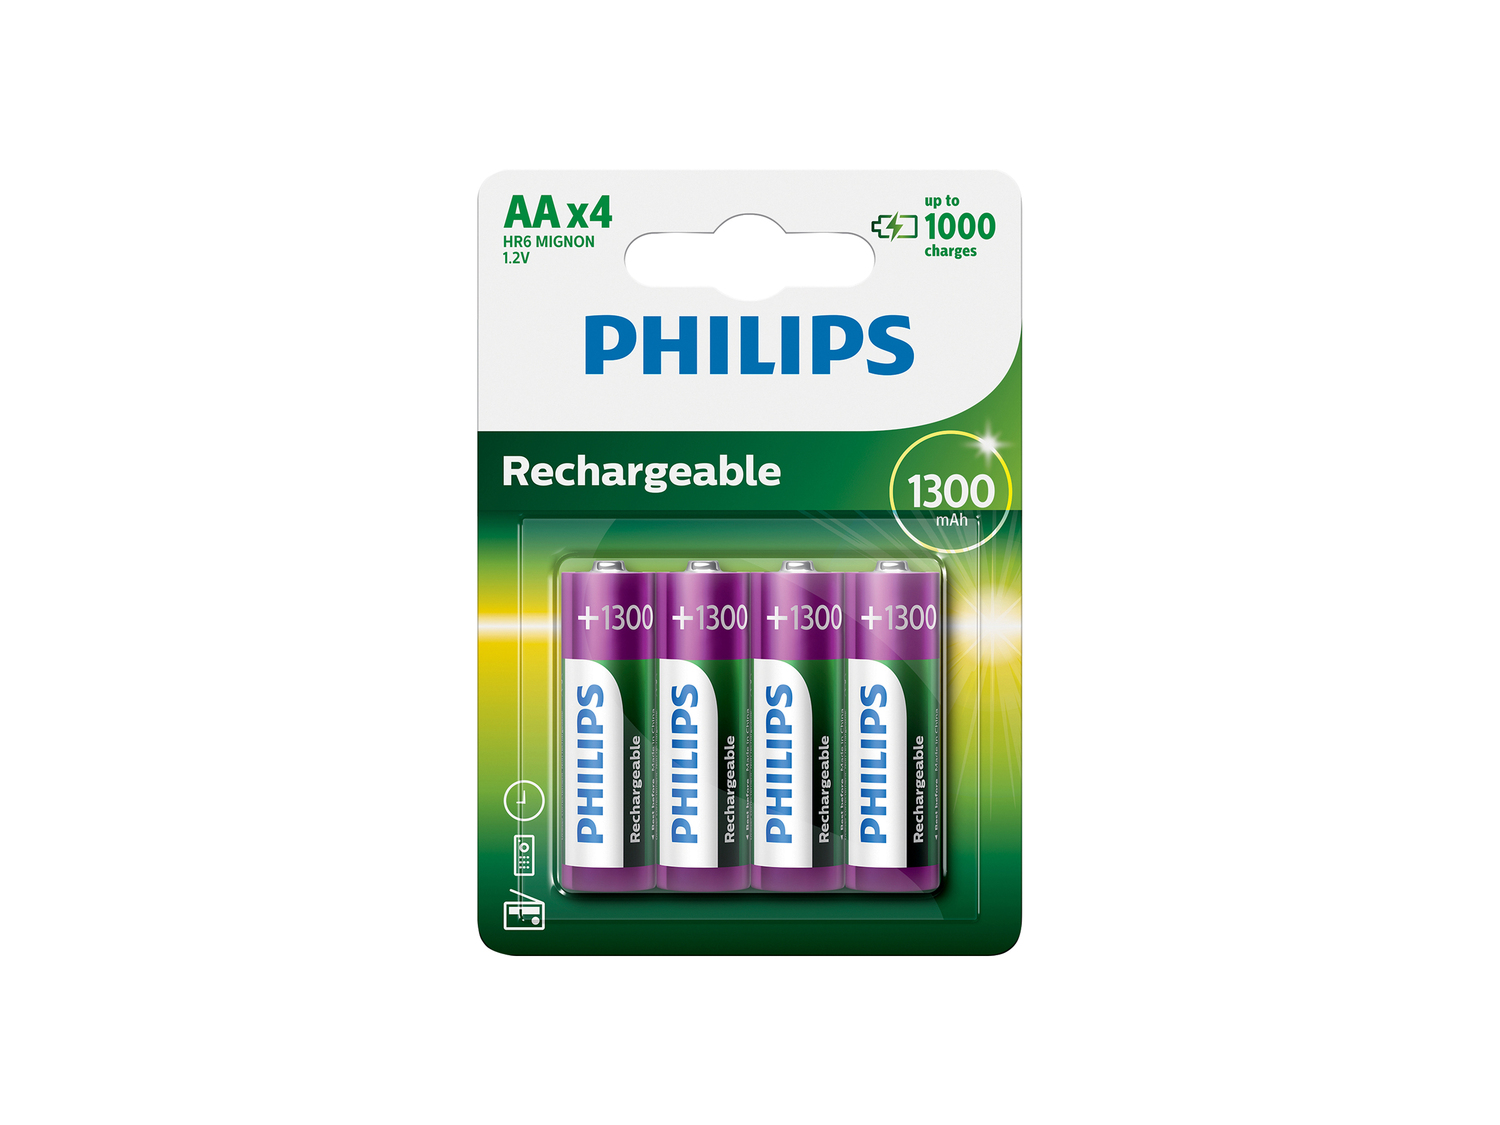 Batterie stilo o ricaricabili Philips, prezzo 6.99 €  

Caratteristiche